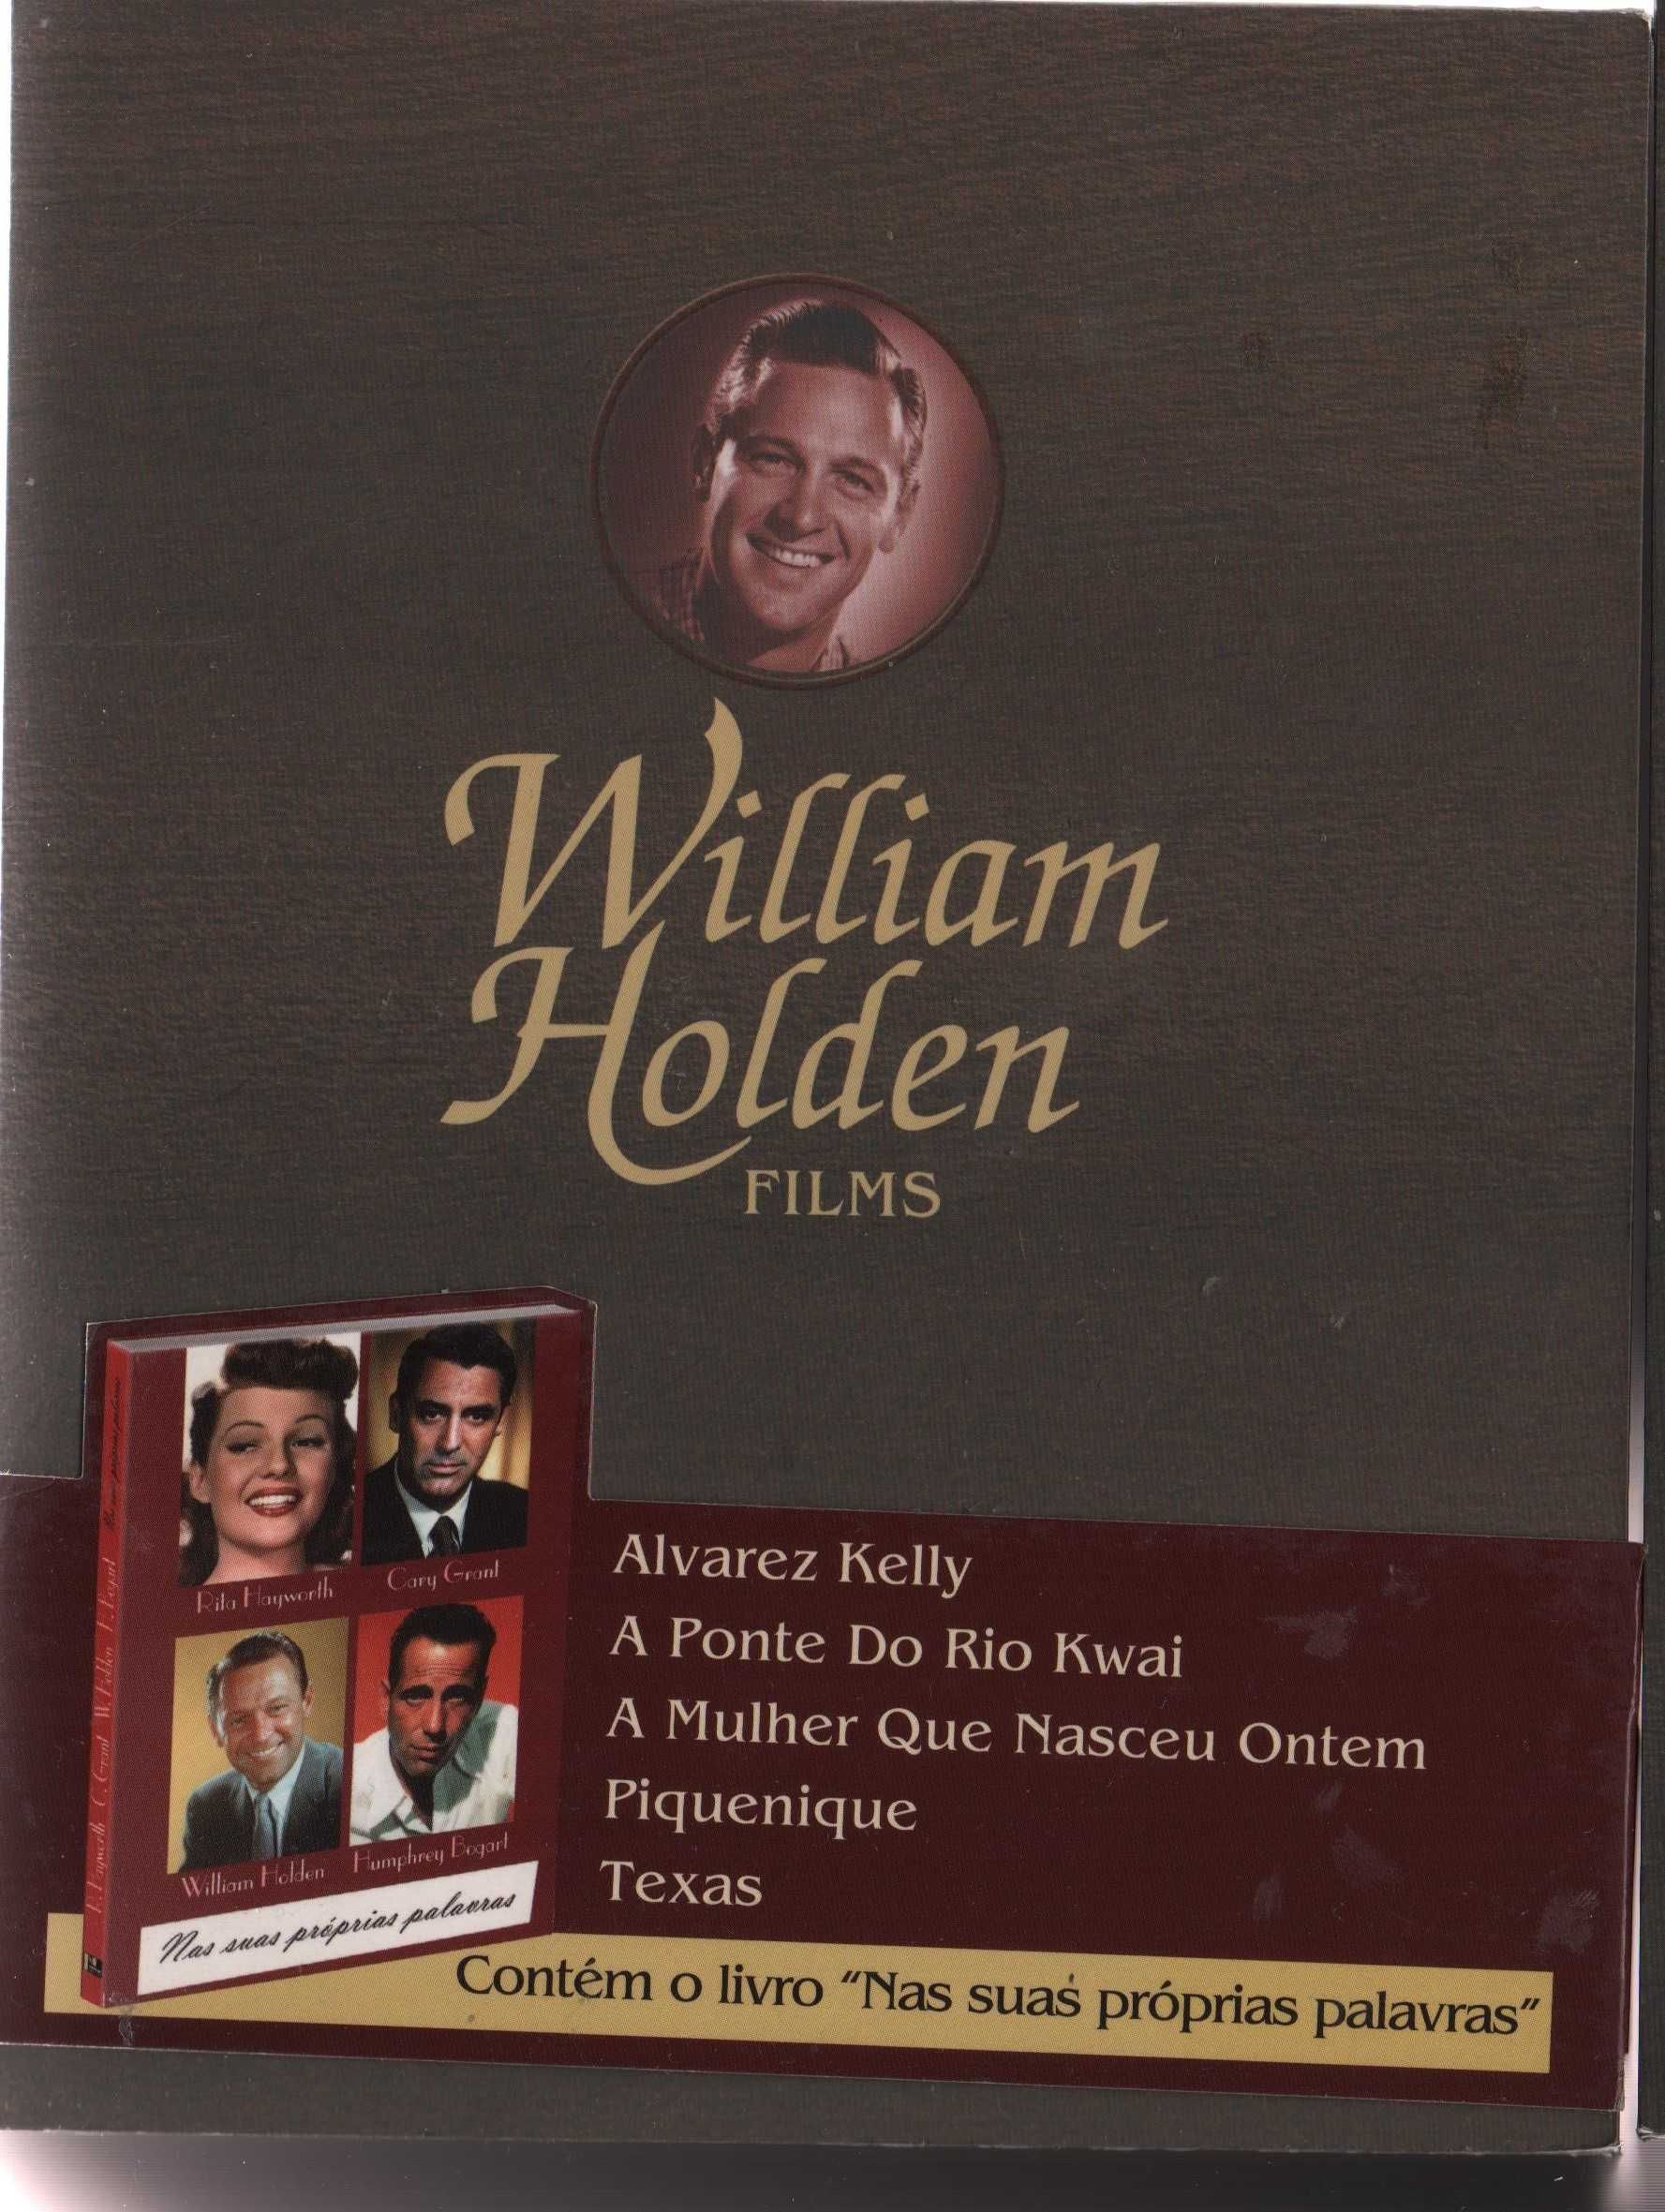 Dvd Caixa com 5 filmes de William Holden - com livro de 80 páginas